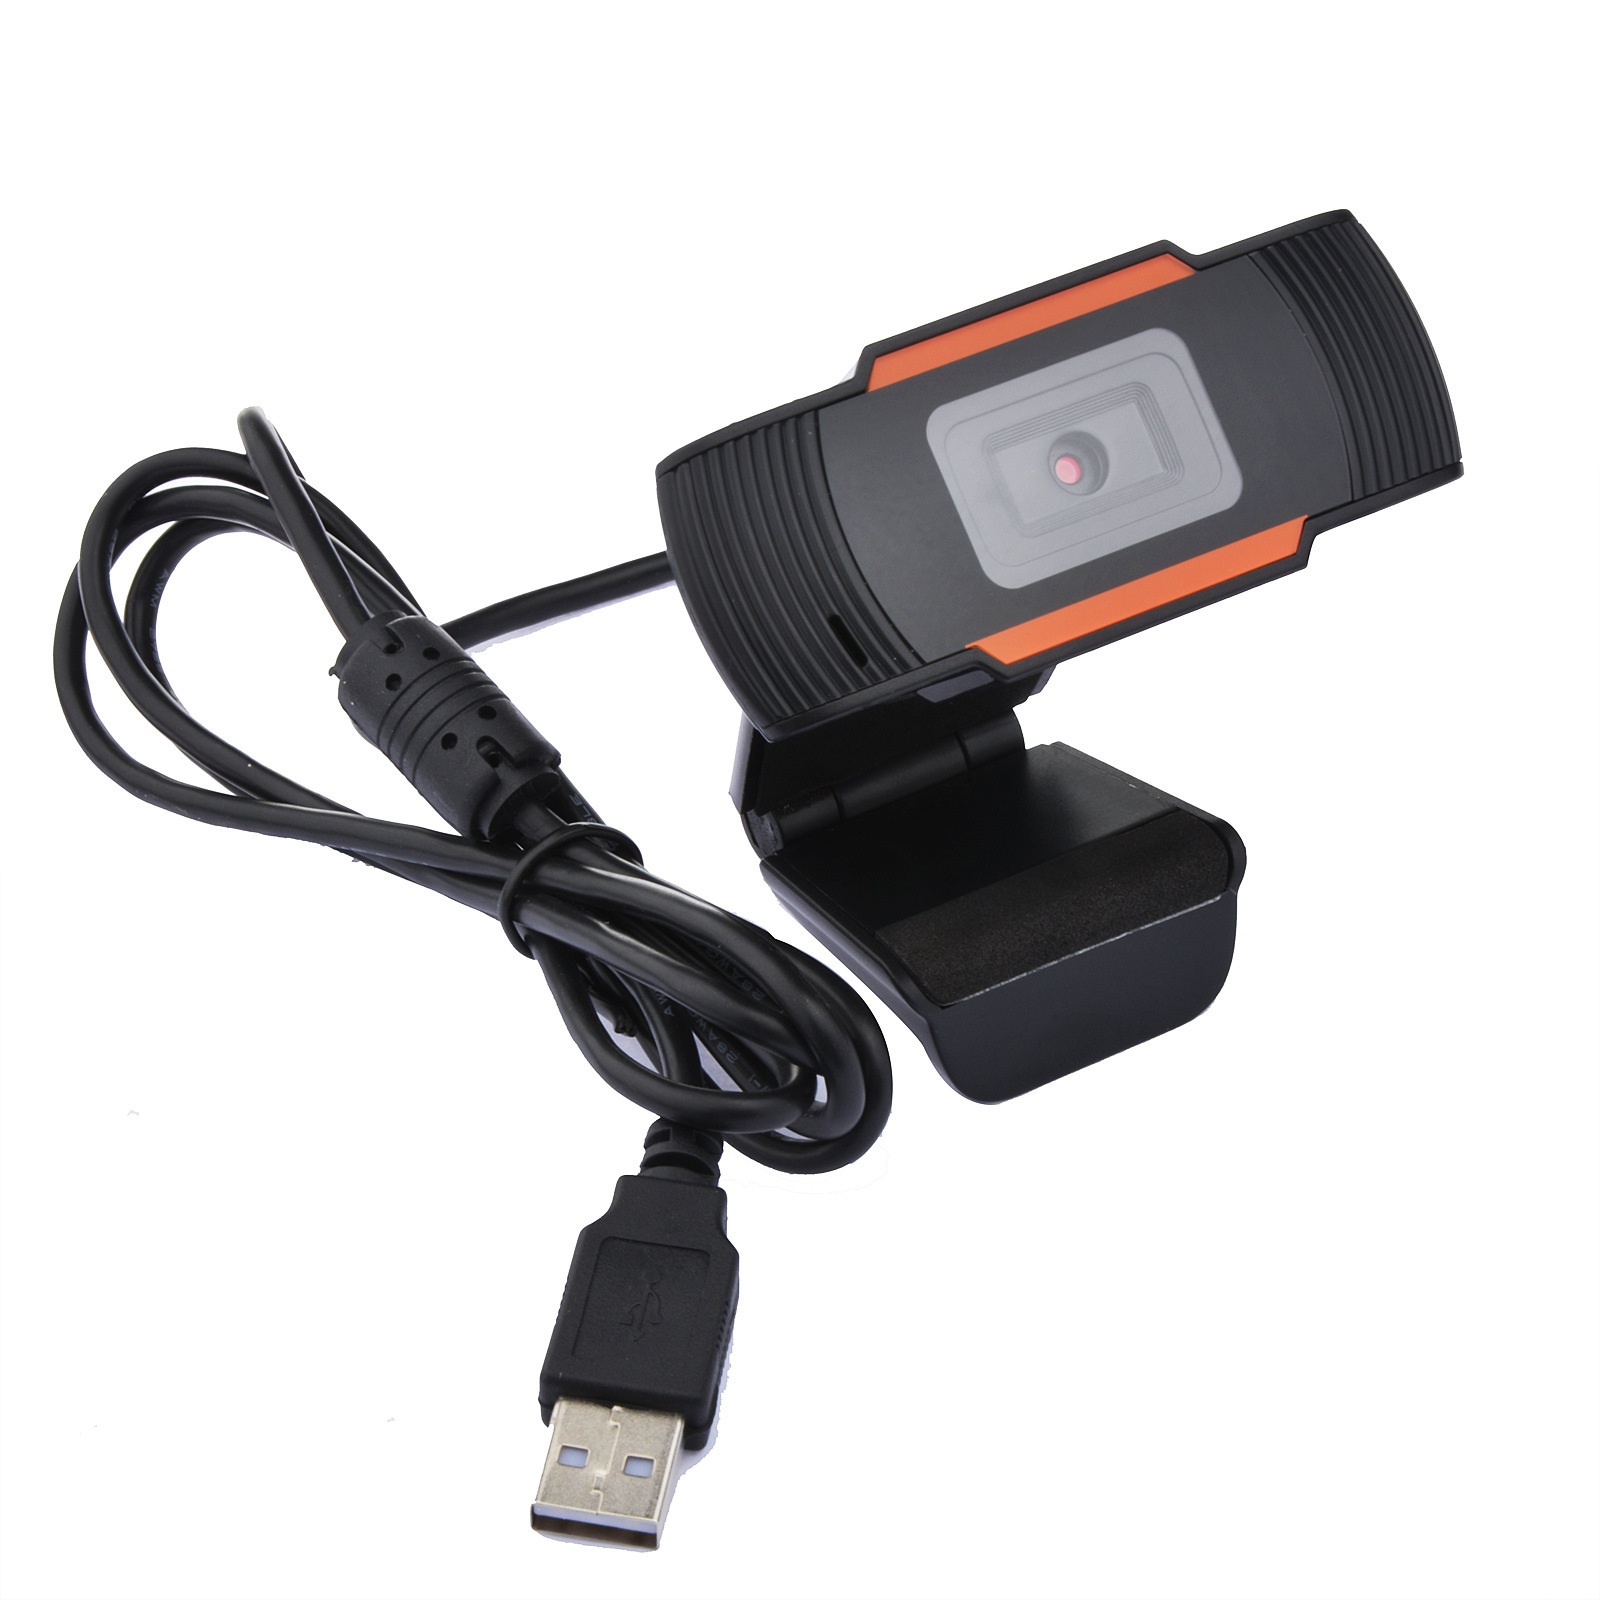 USB-Webcam HD 1080p-Kamera für Computer-PC-Videoaufzeichnung, Netzwerk, Live-Webkamera mit Mikrofon, kostenloses Laufwerk, Streaming von Breitbildvideos